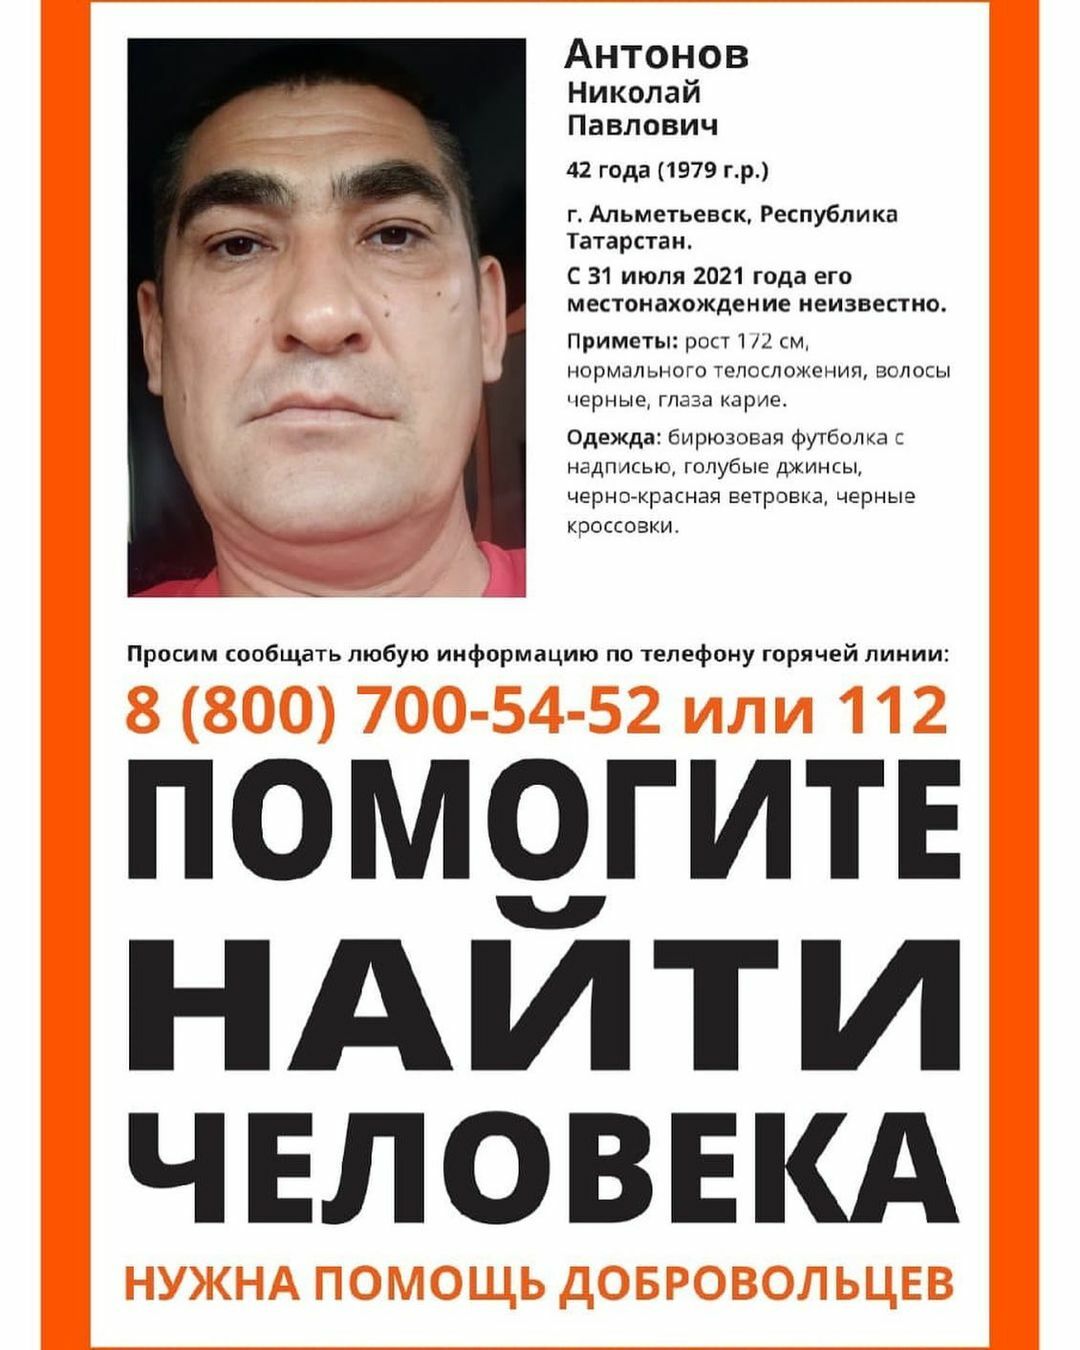 В Альметьевске разыскивают пропавшего 42-летнего мужчину